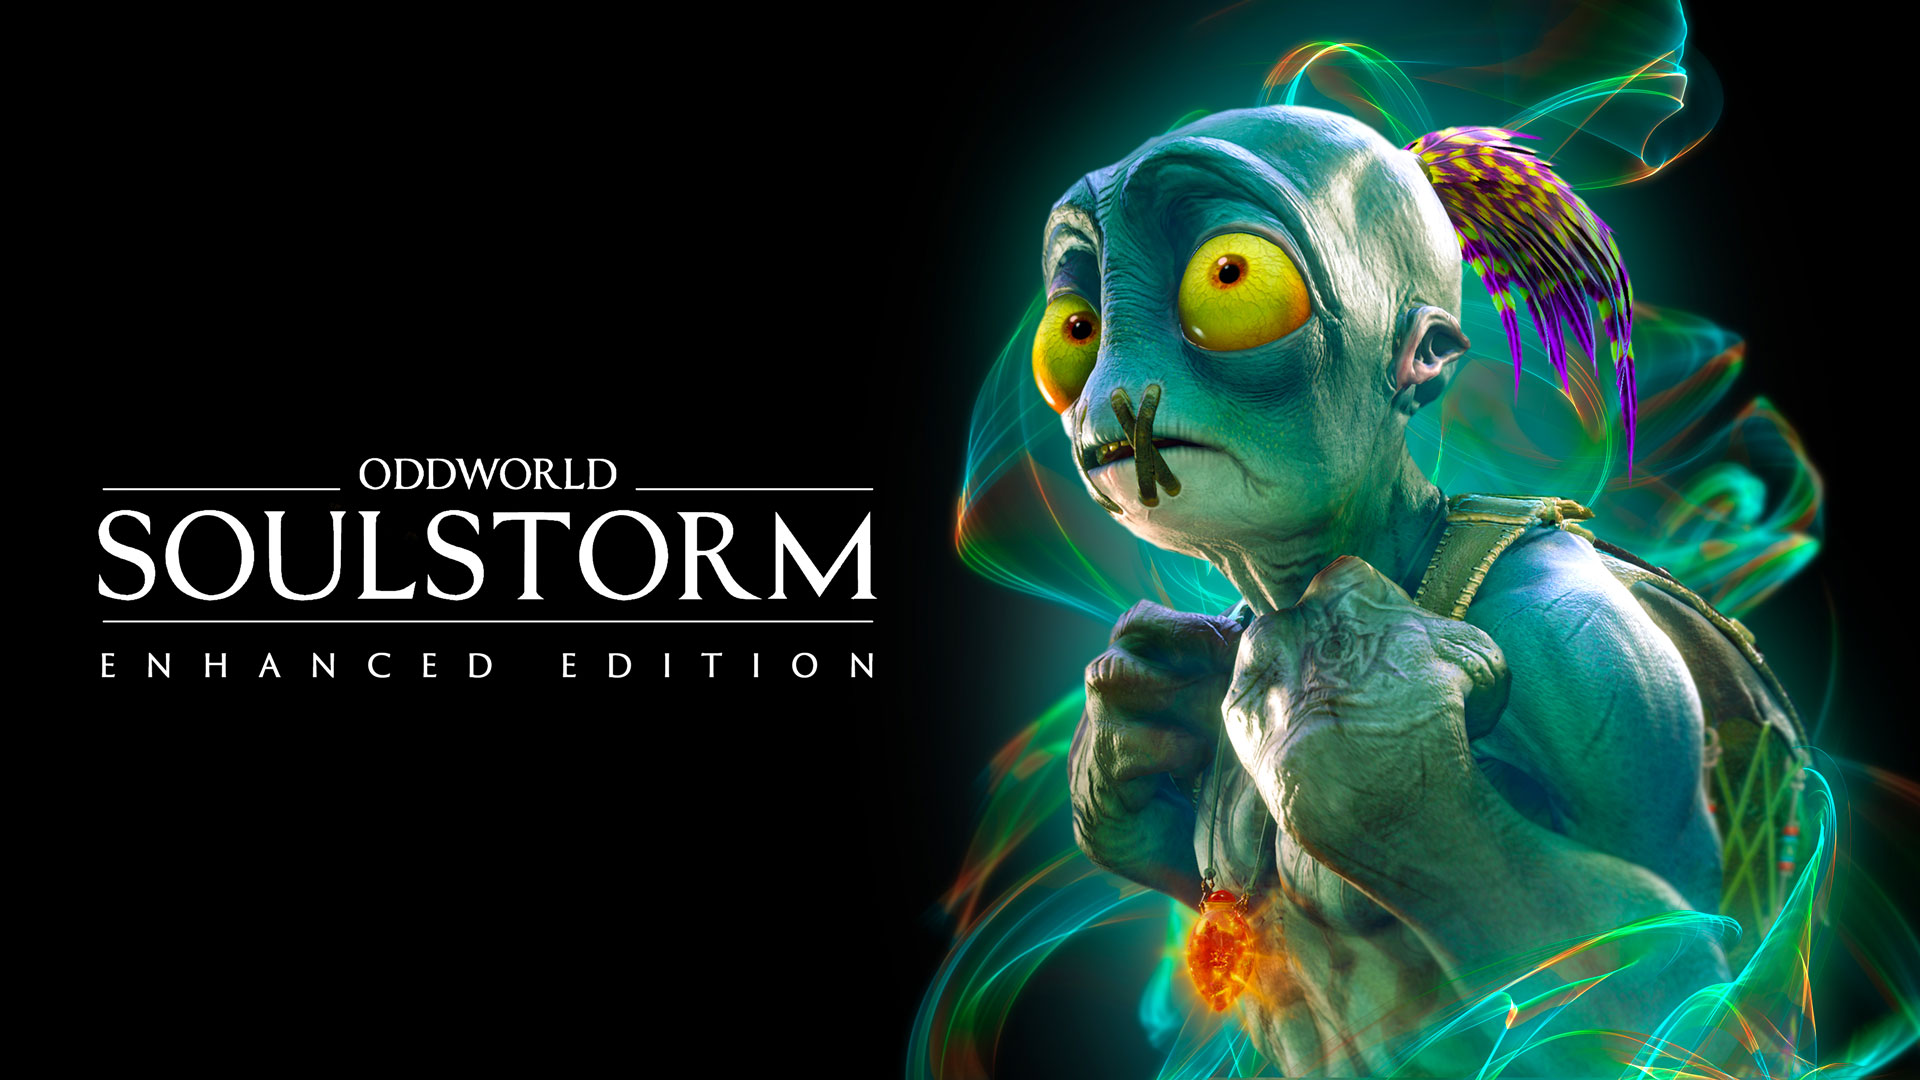 Przedłużona data premiery Oddworld: Soulstorm została ujawniona